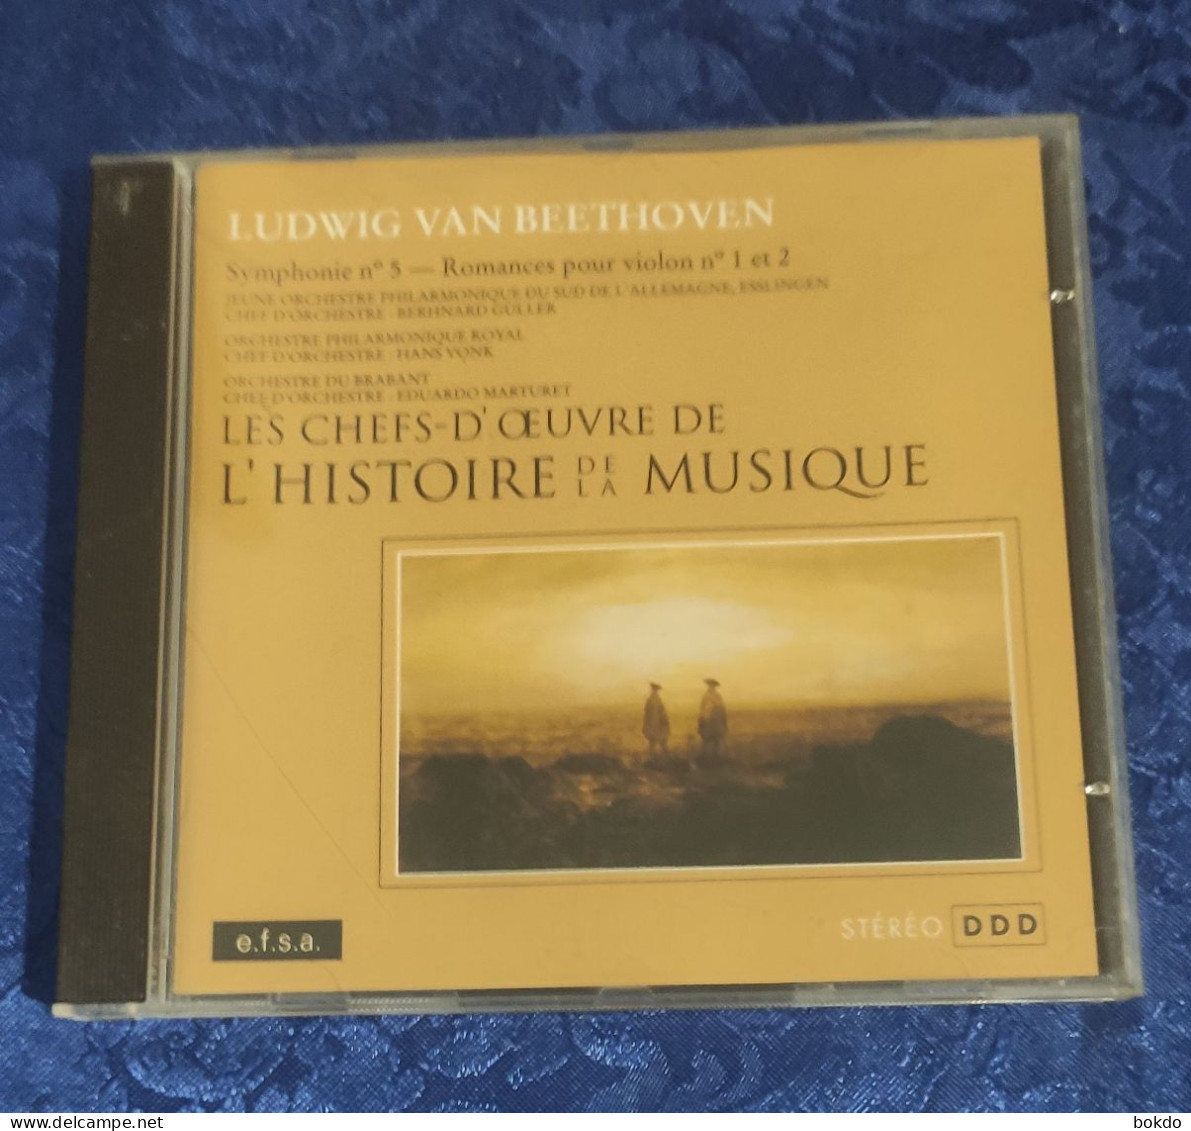 Ludwig Van Beethoven - Symphonie N° 5 - Romances Pour Violon N) 1 Et 2 - Klassiekers